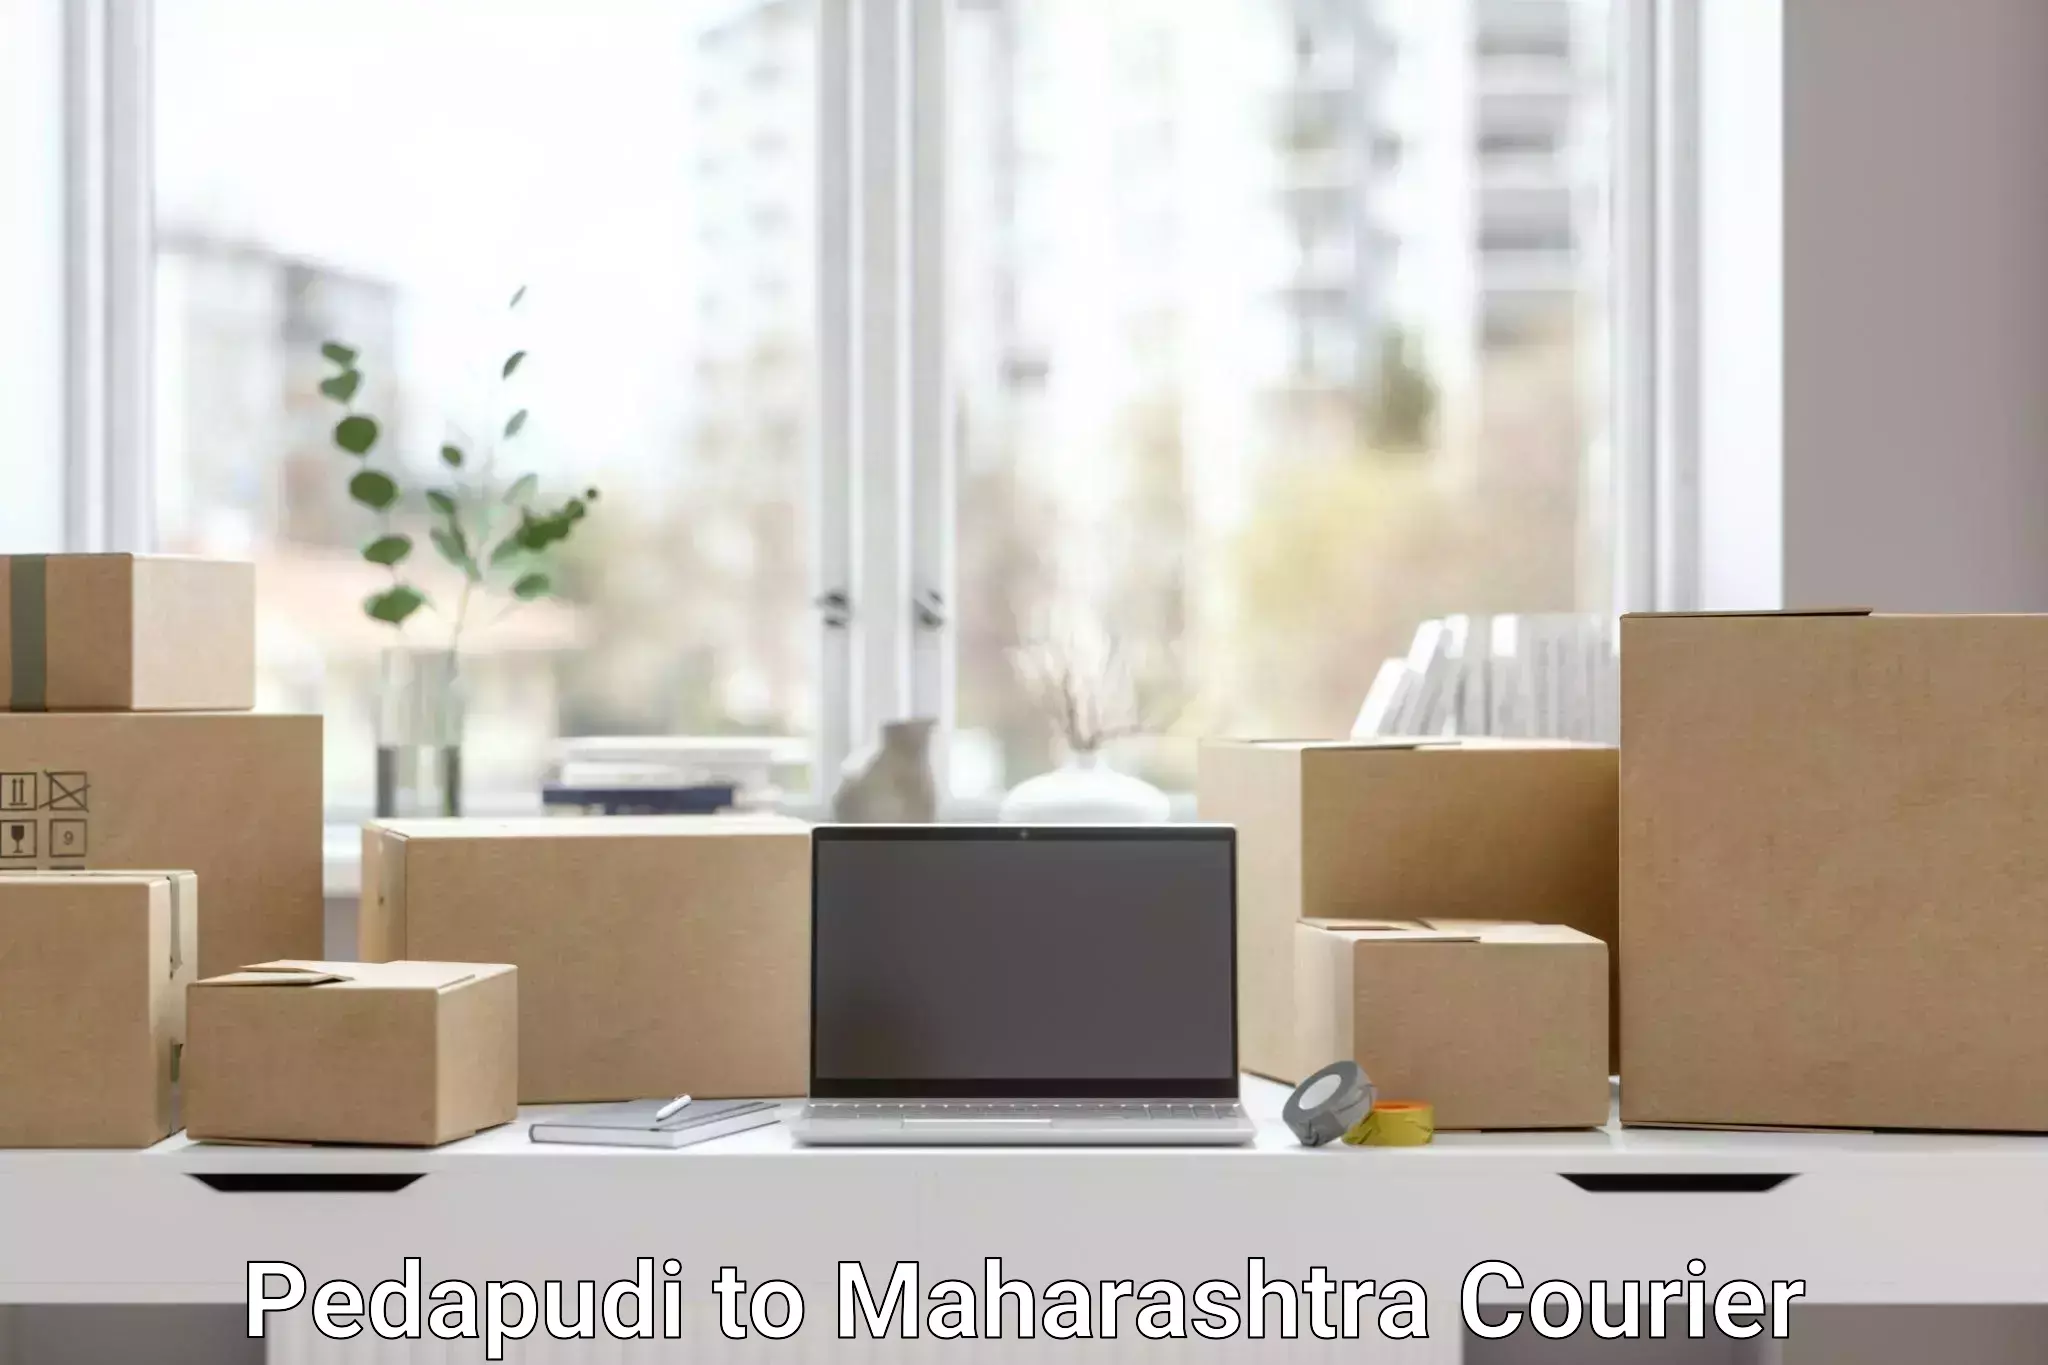 Customized shipping options Pedapudi to Nashik